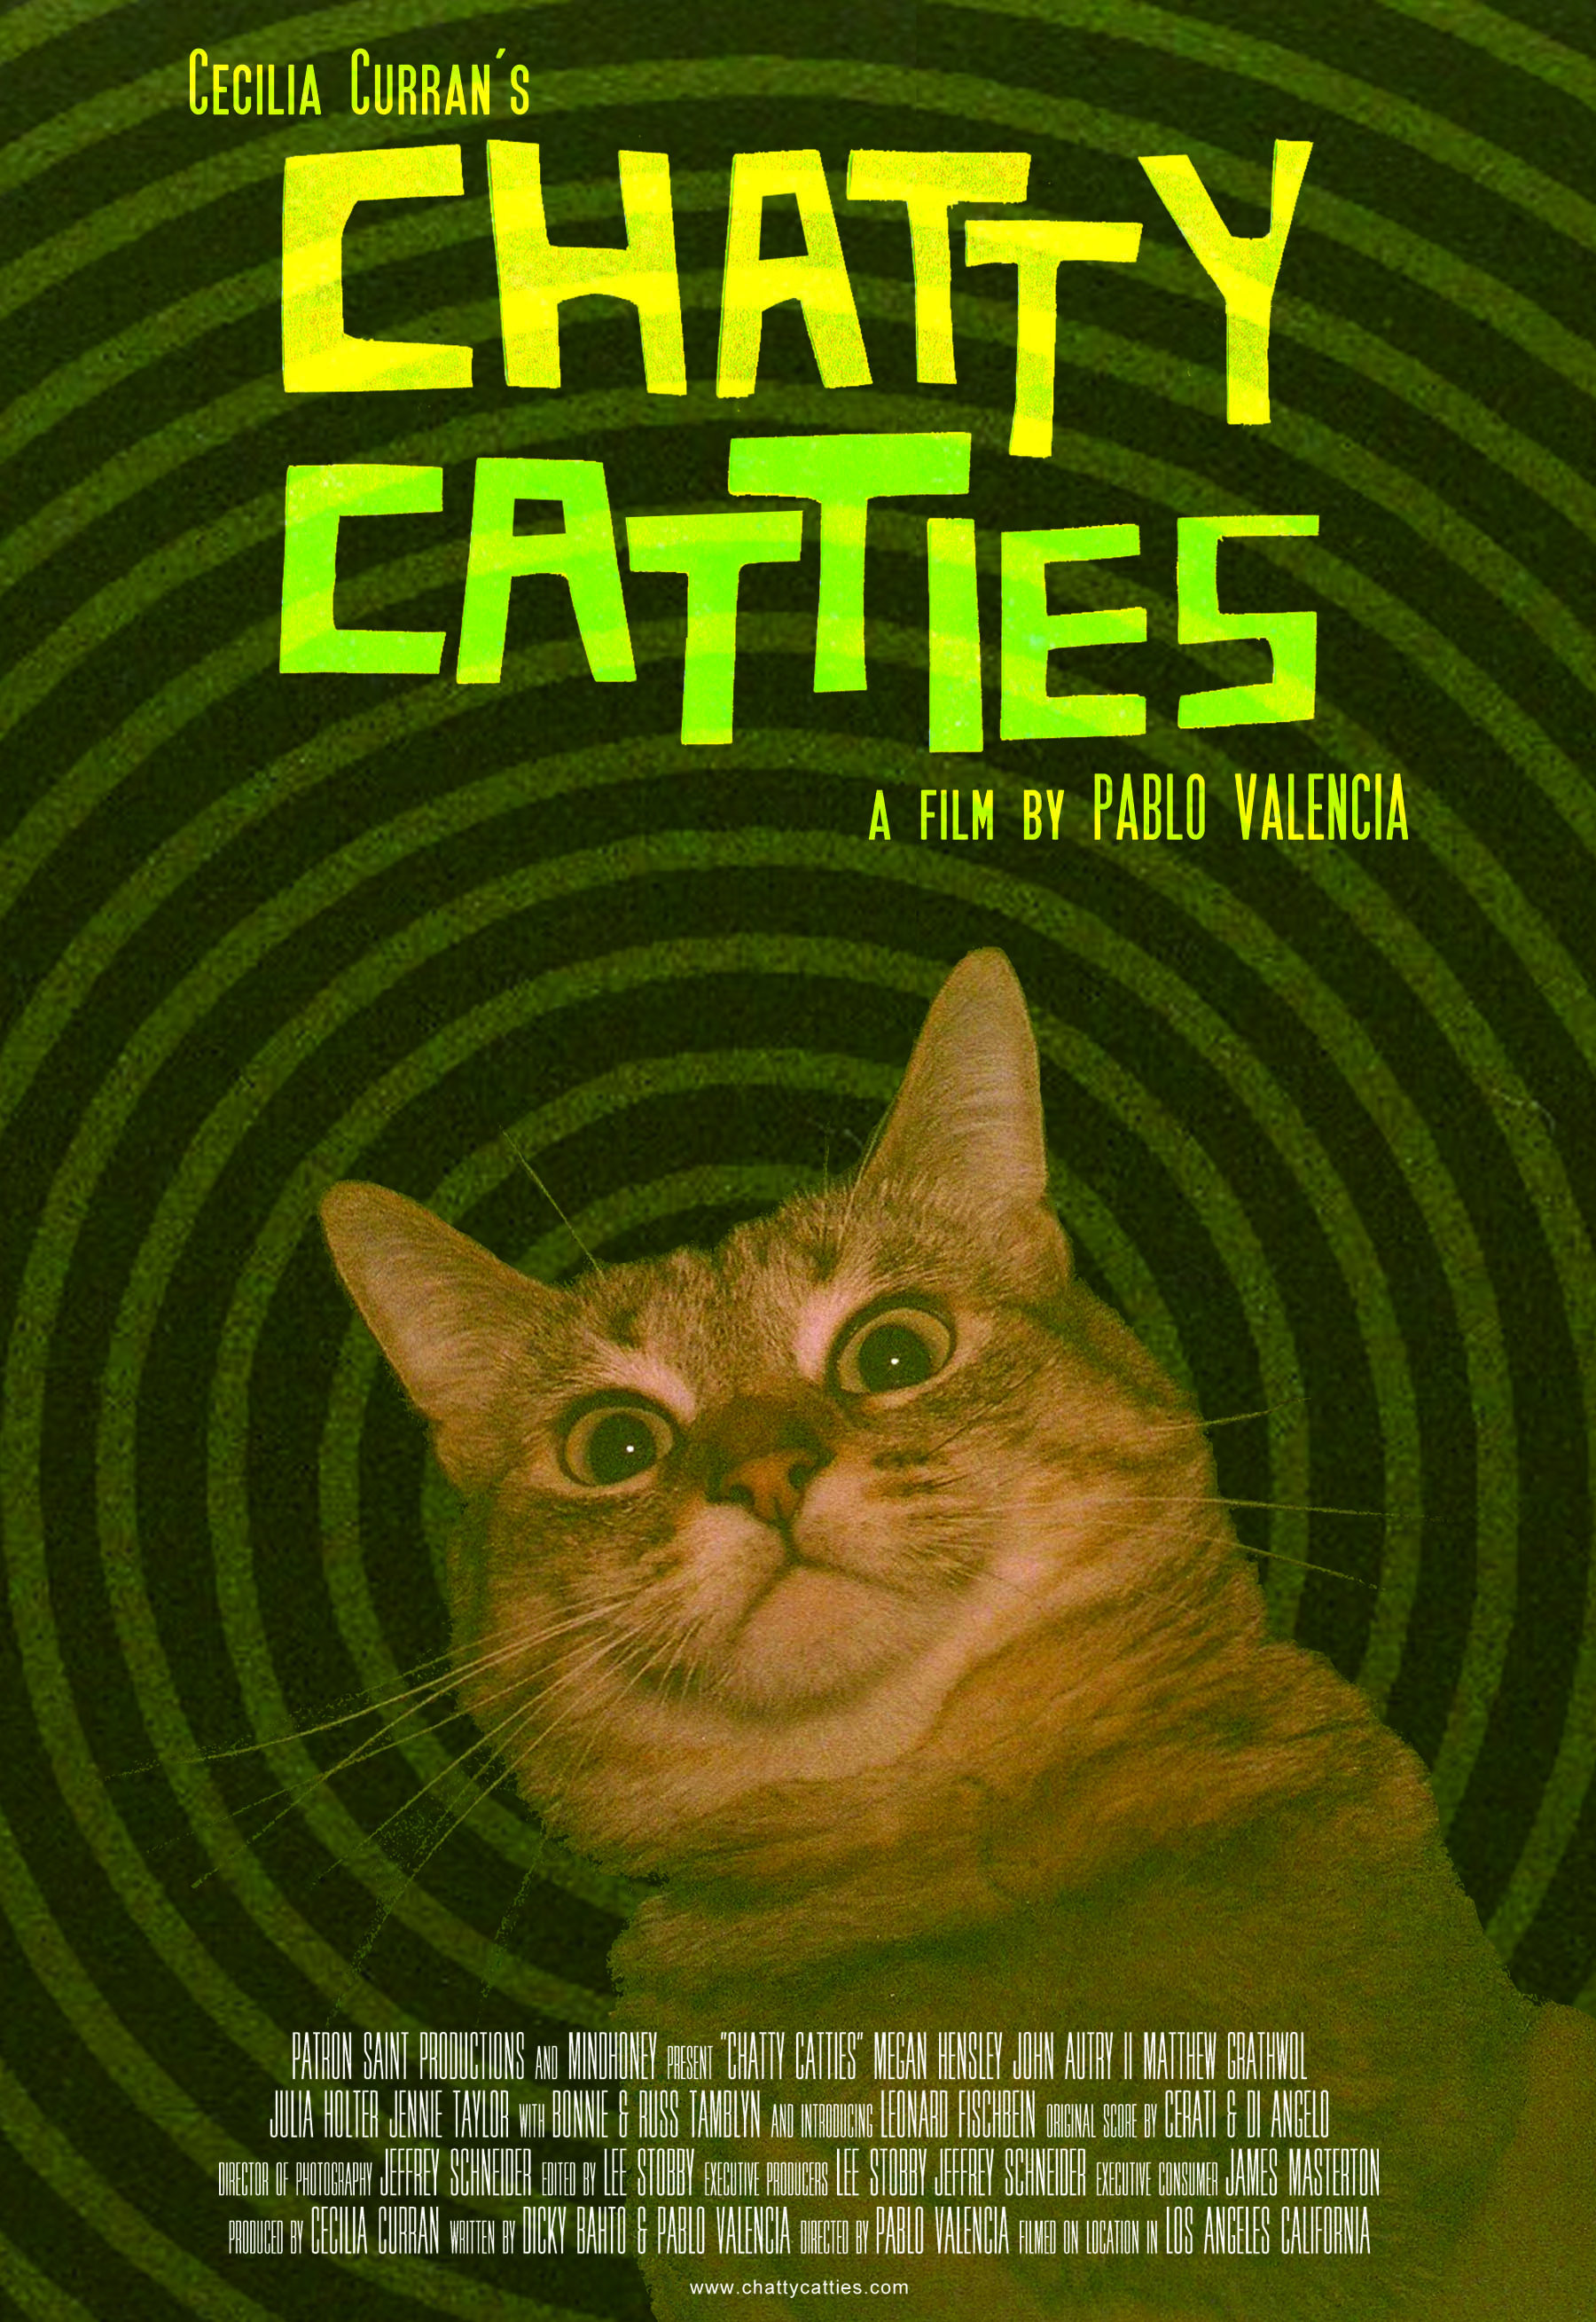 Chatty Catties (2015) Screenshot 1